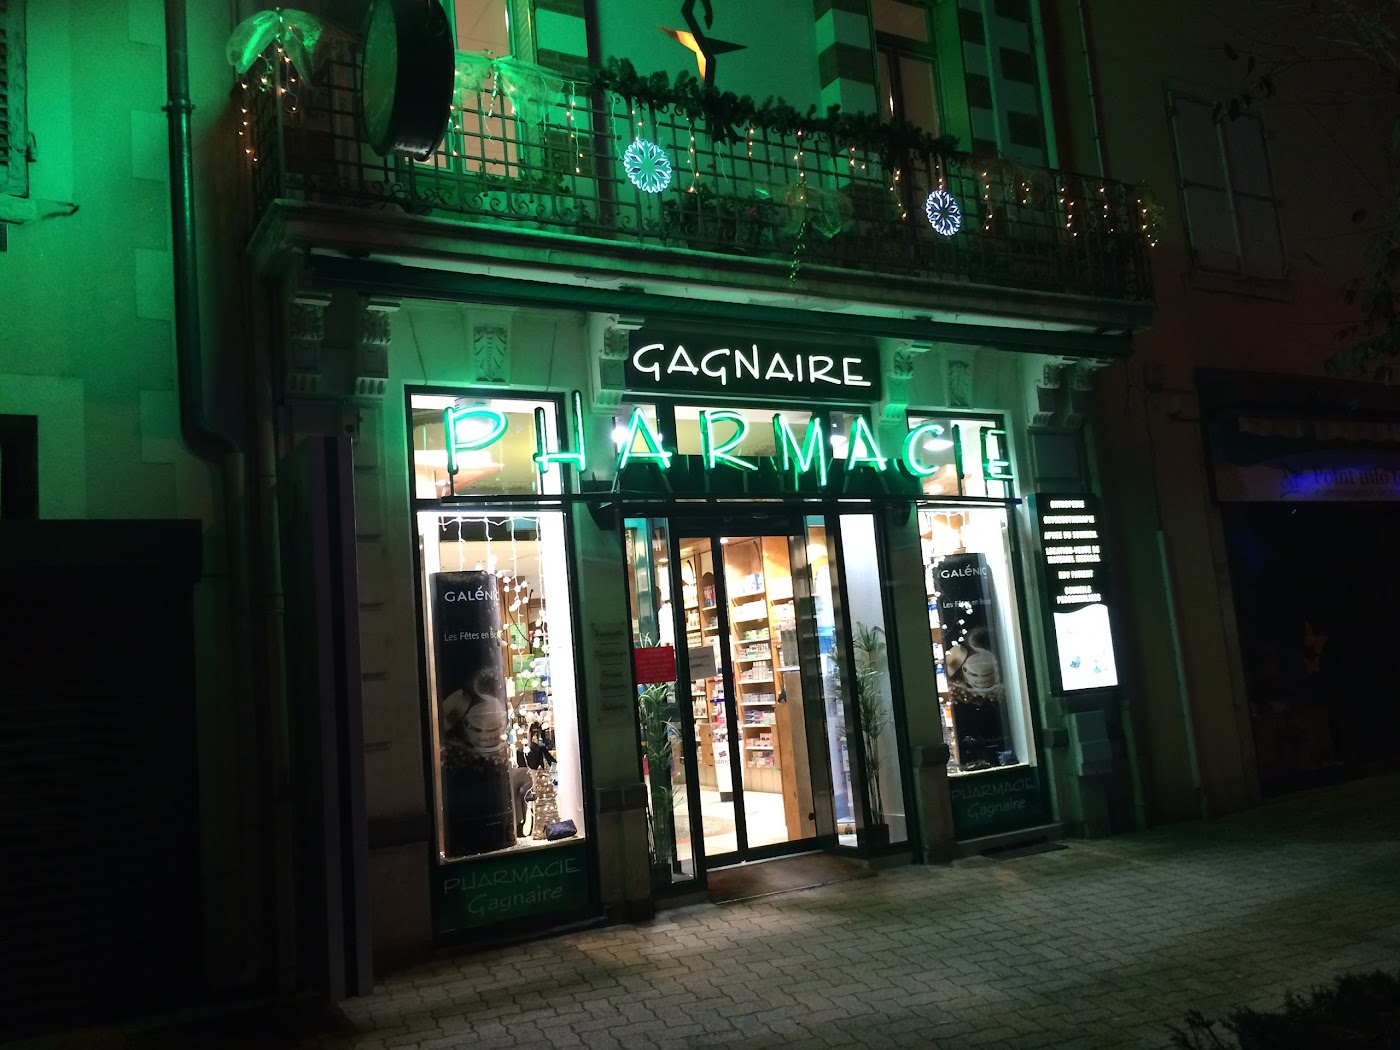 Pharmacie Gagnaire